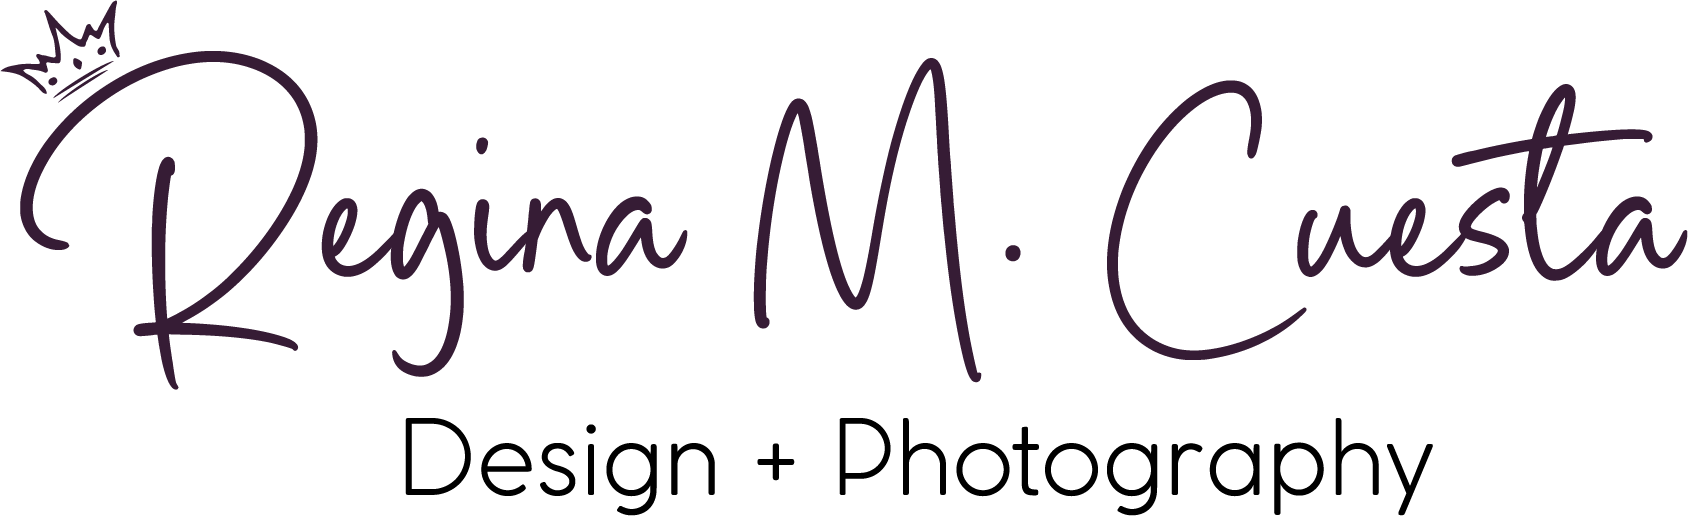 Regina Cuesta Design + Photography